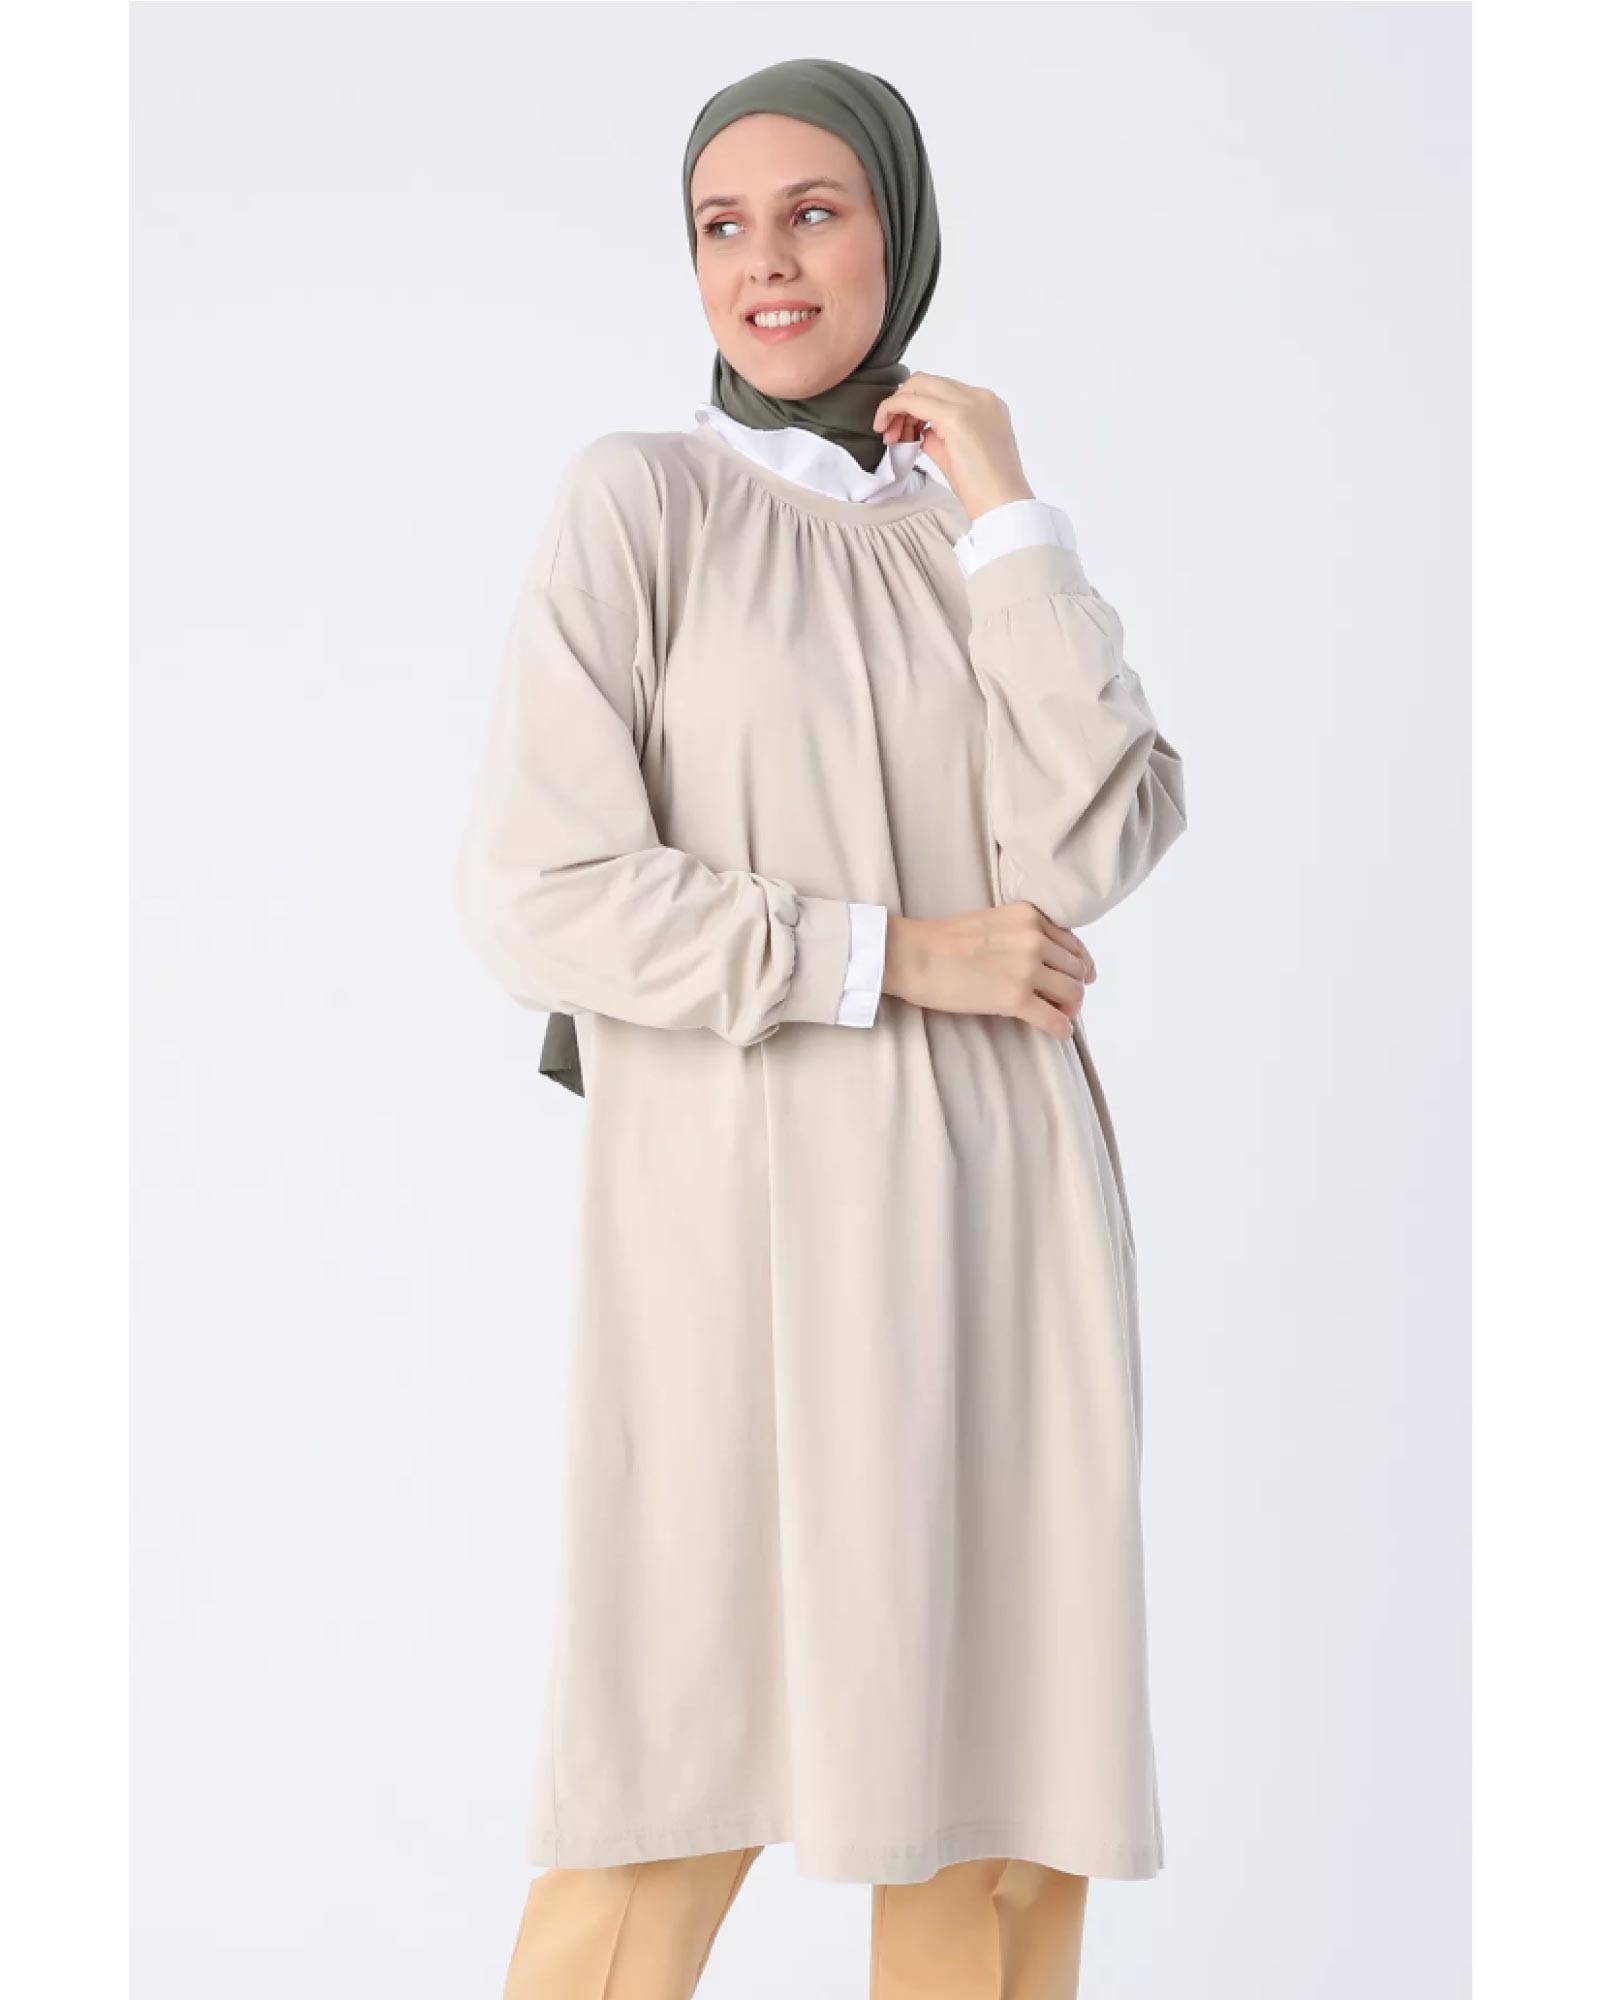 Hijab- Die Baumwoll-Tunika mit gerüschten Details und einem aufrecht stehenden Kragen